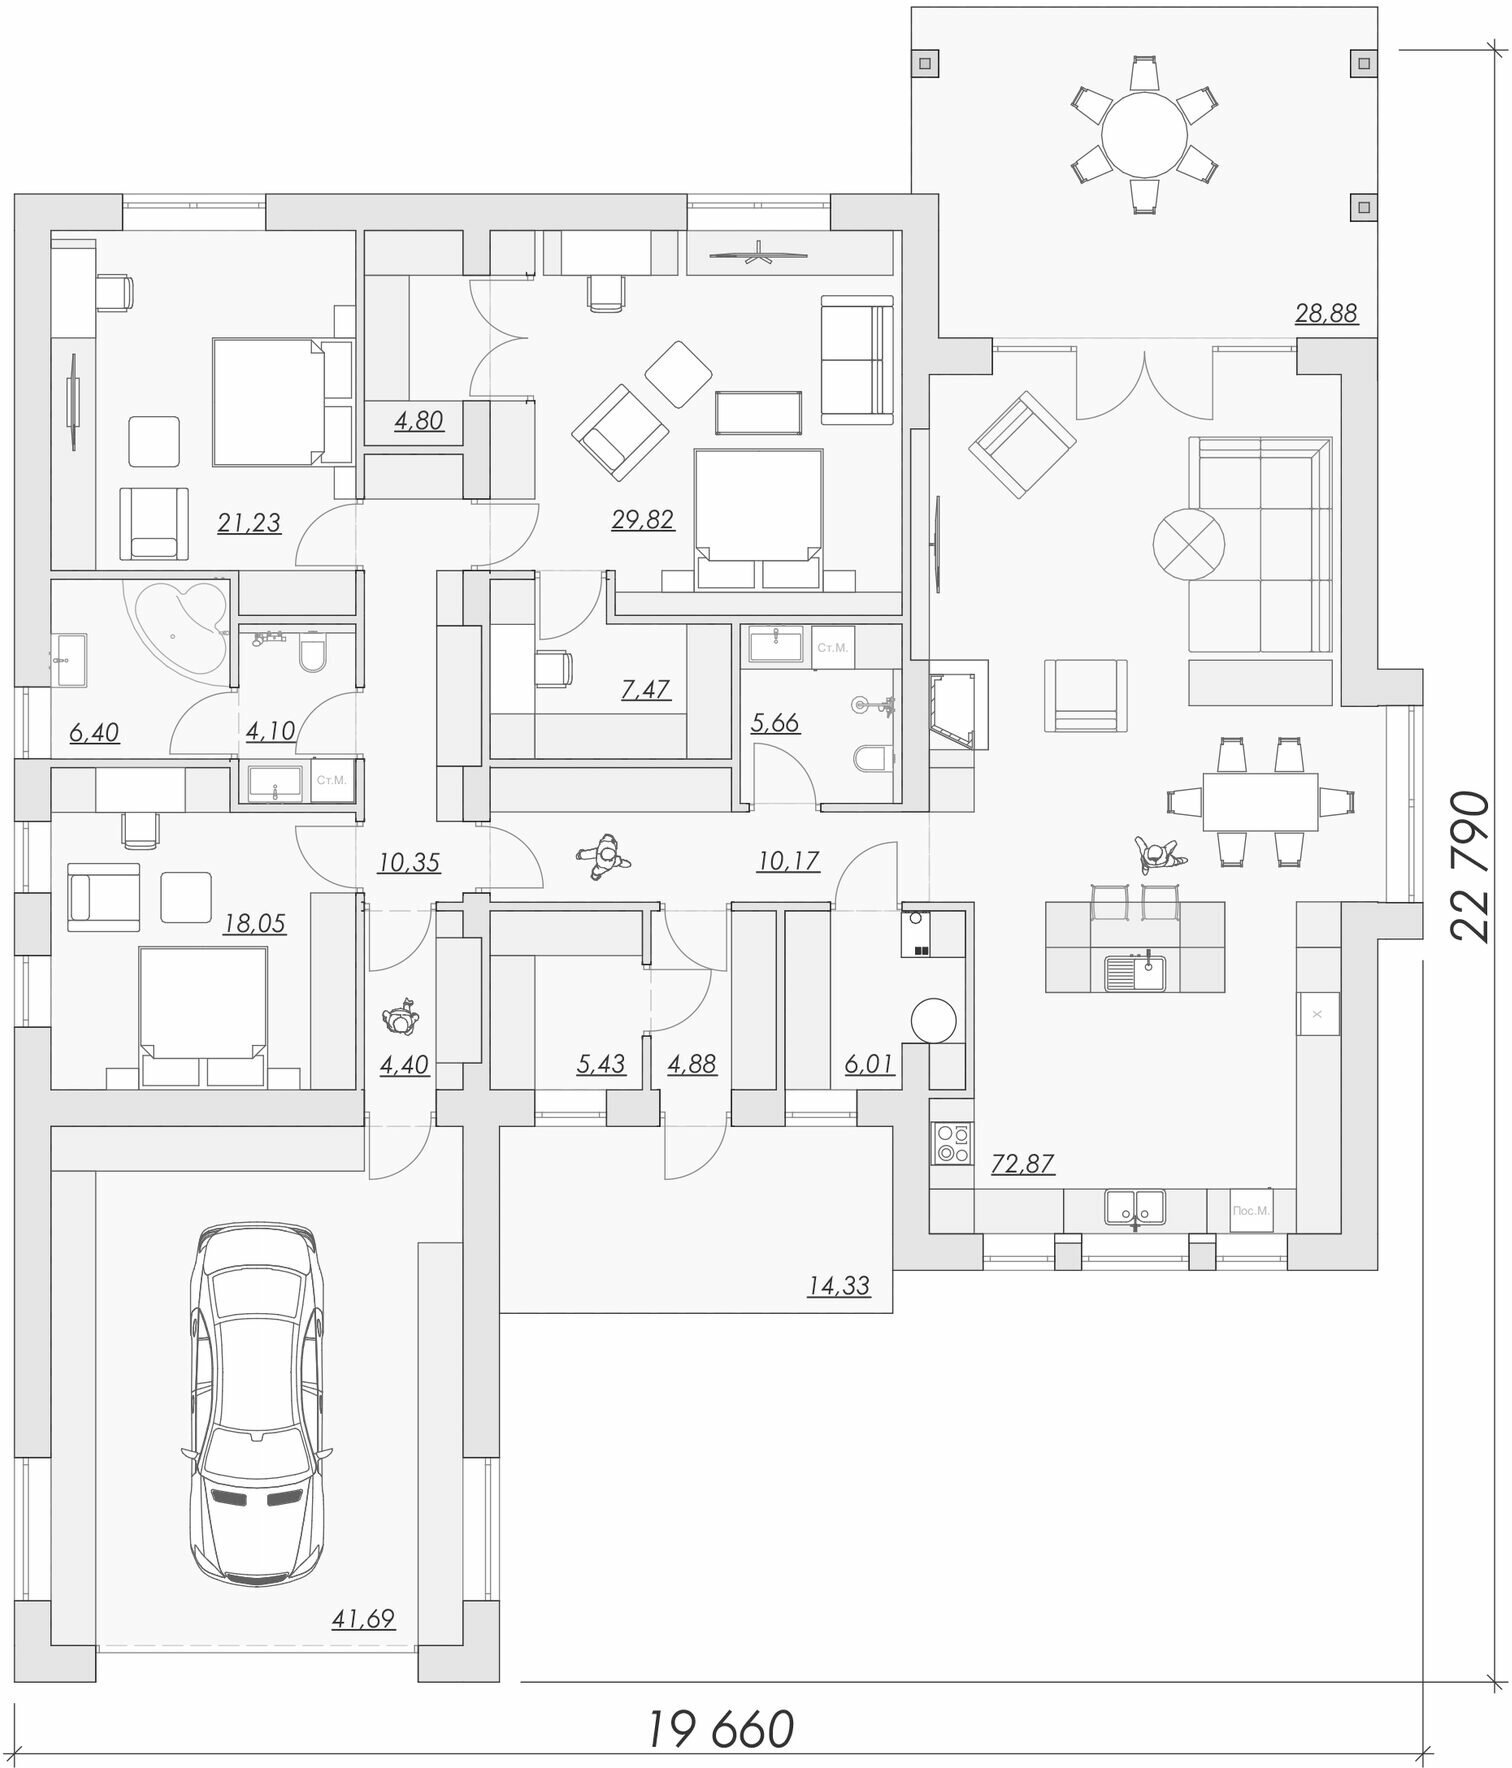 Классический загородный дом с гаражом, большой общей зоной кухни с гостиной, 3 спальнями и идеальной интерьерной мебелировкой - фотография № 2